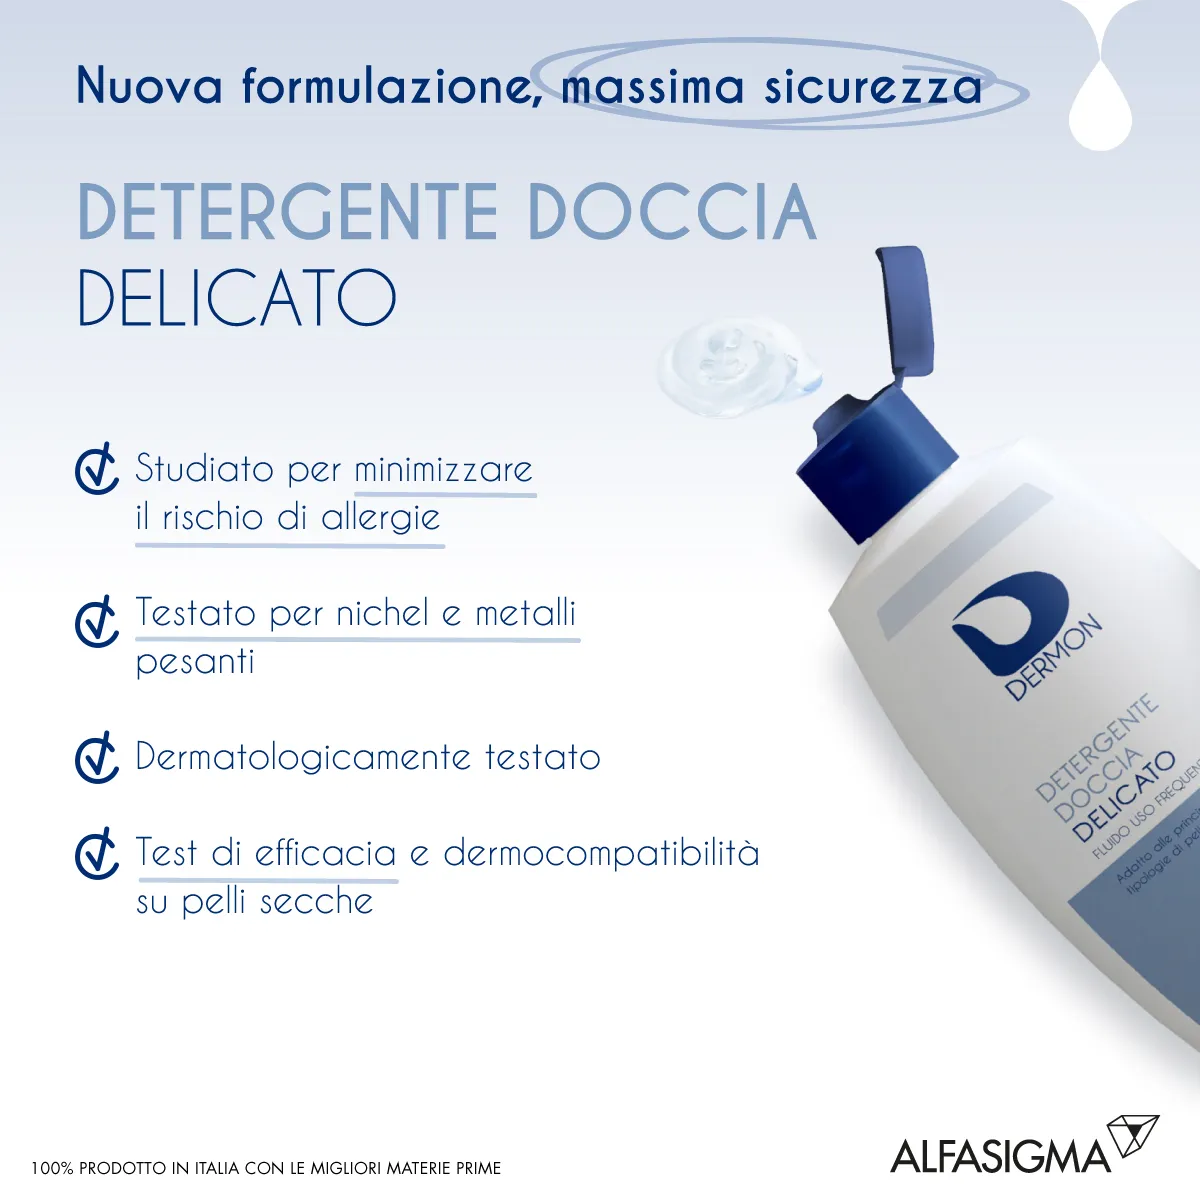 Dermon Detergente Doccia Delicato 400 ml 